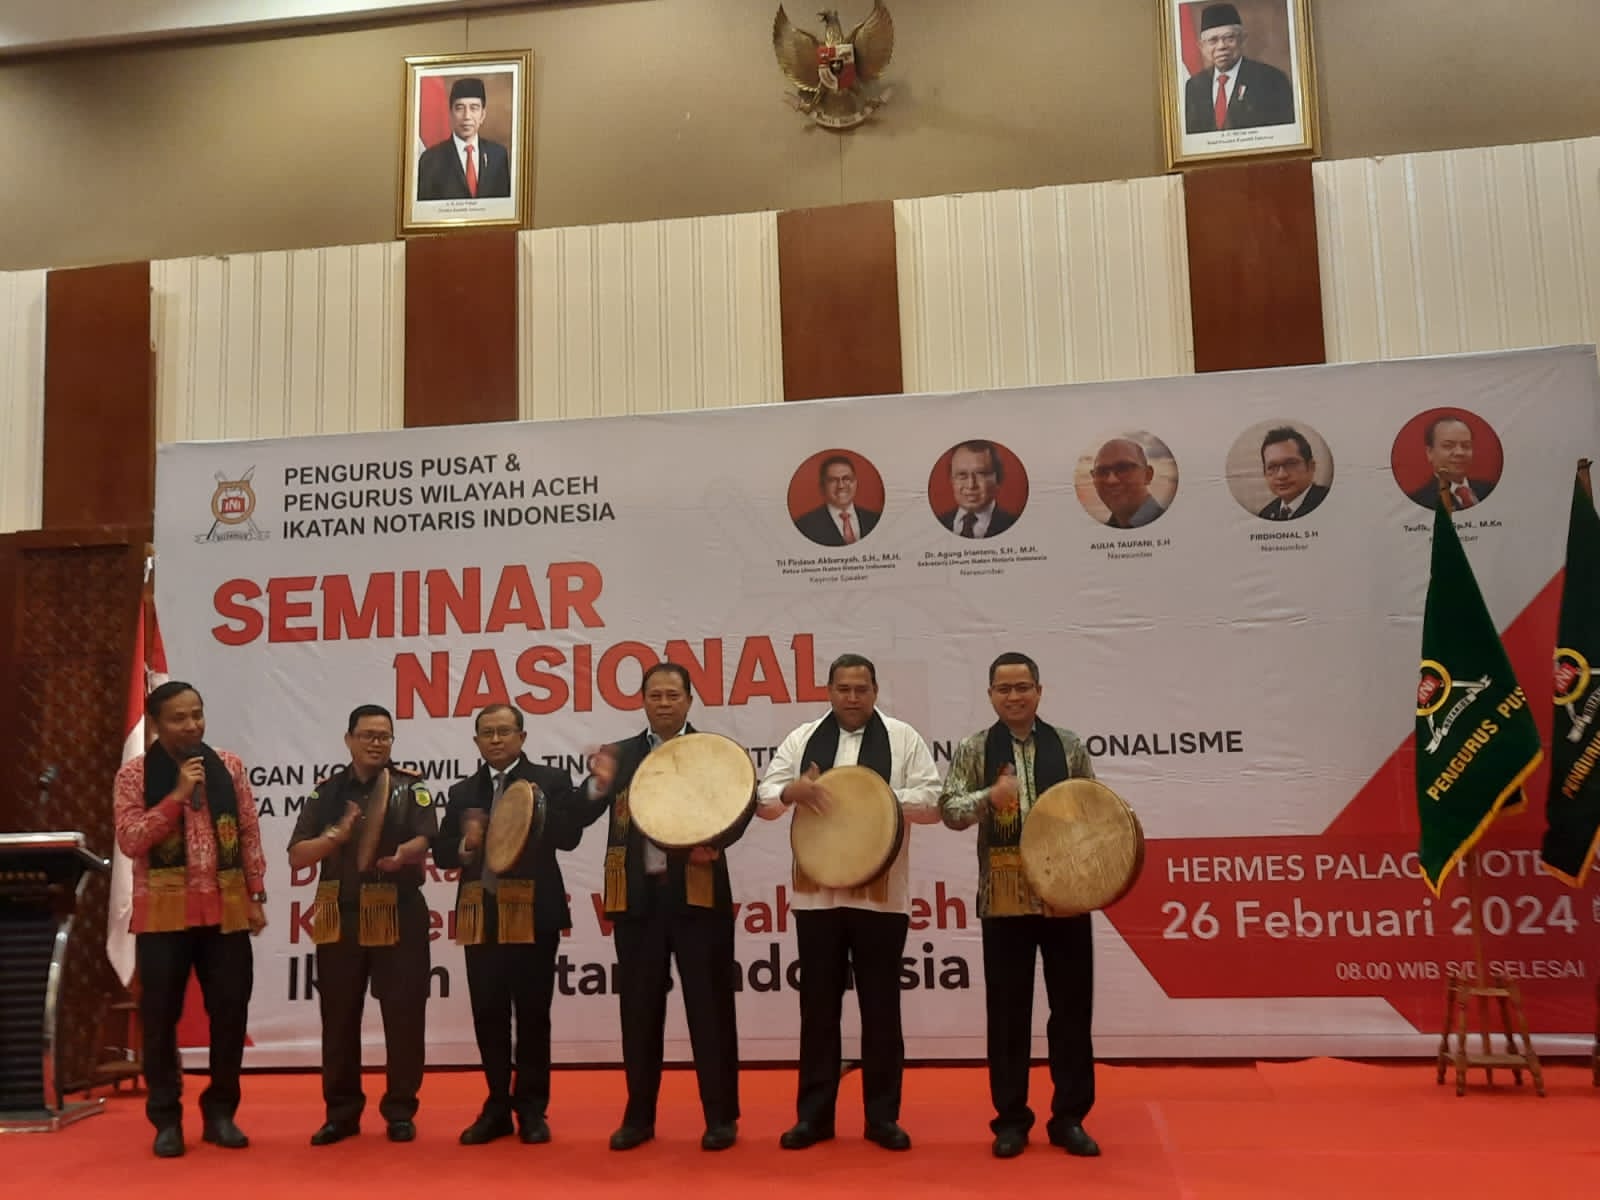 Seminar Nasional dan Konferensi Wilayah (Konferwil) INI di Ballroom Hermes Palace Hotel, Banda Aceh pada Senin (26/2). Foto: istimewa.